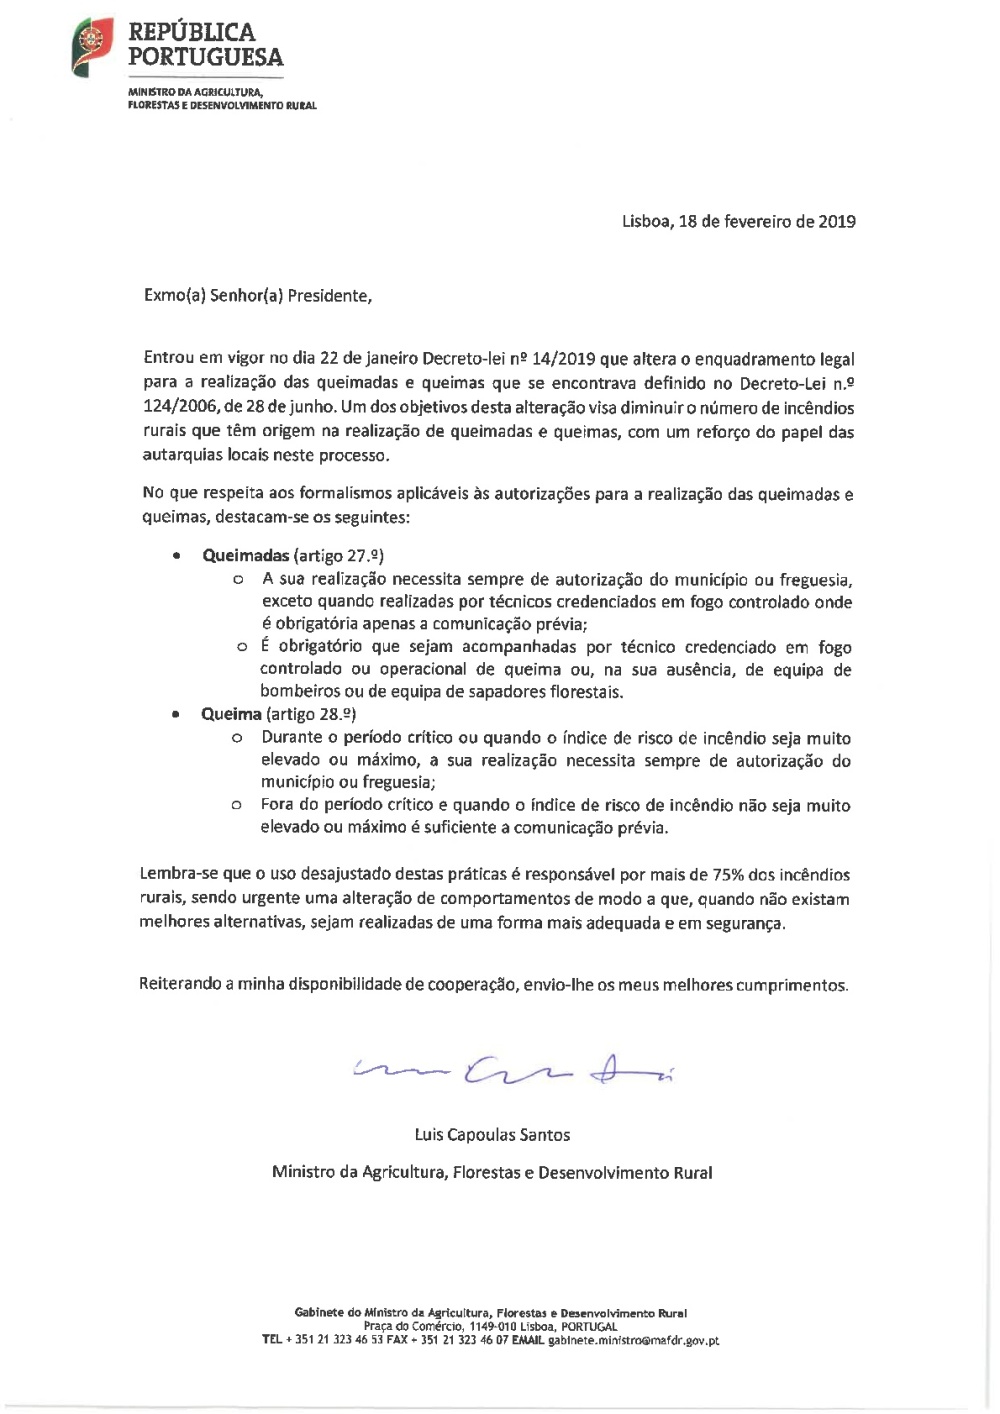 Queimas e Queimadas - Decreto Lei Nº 14/2019